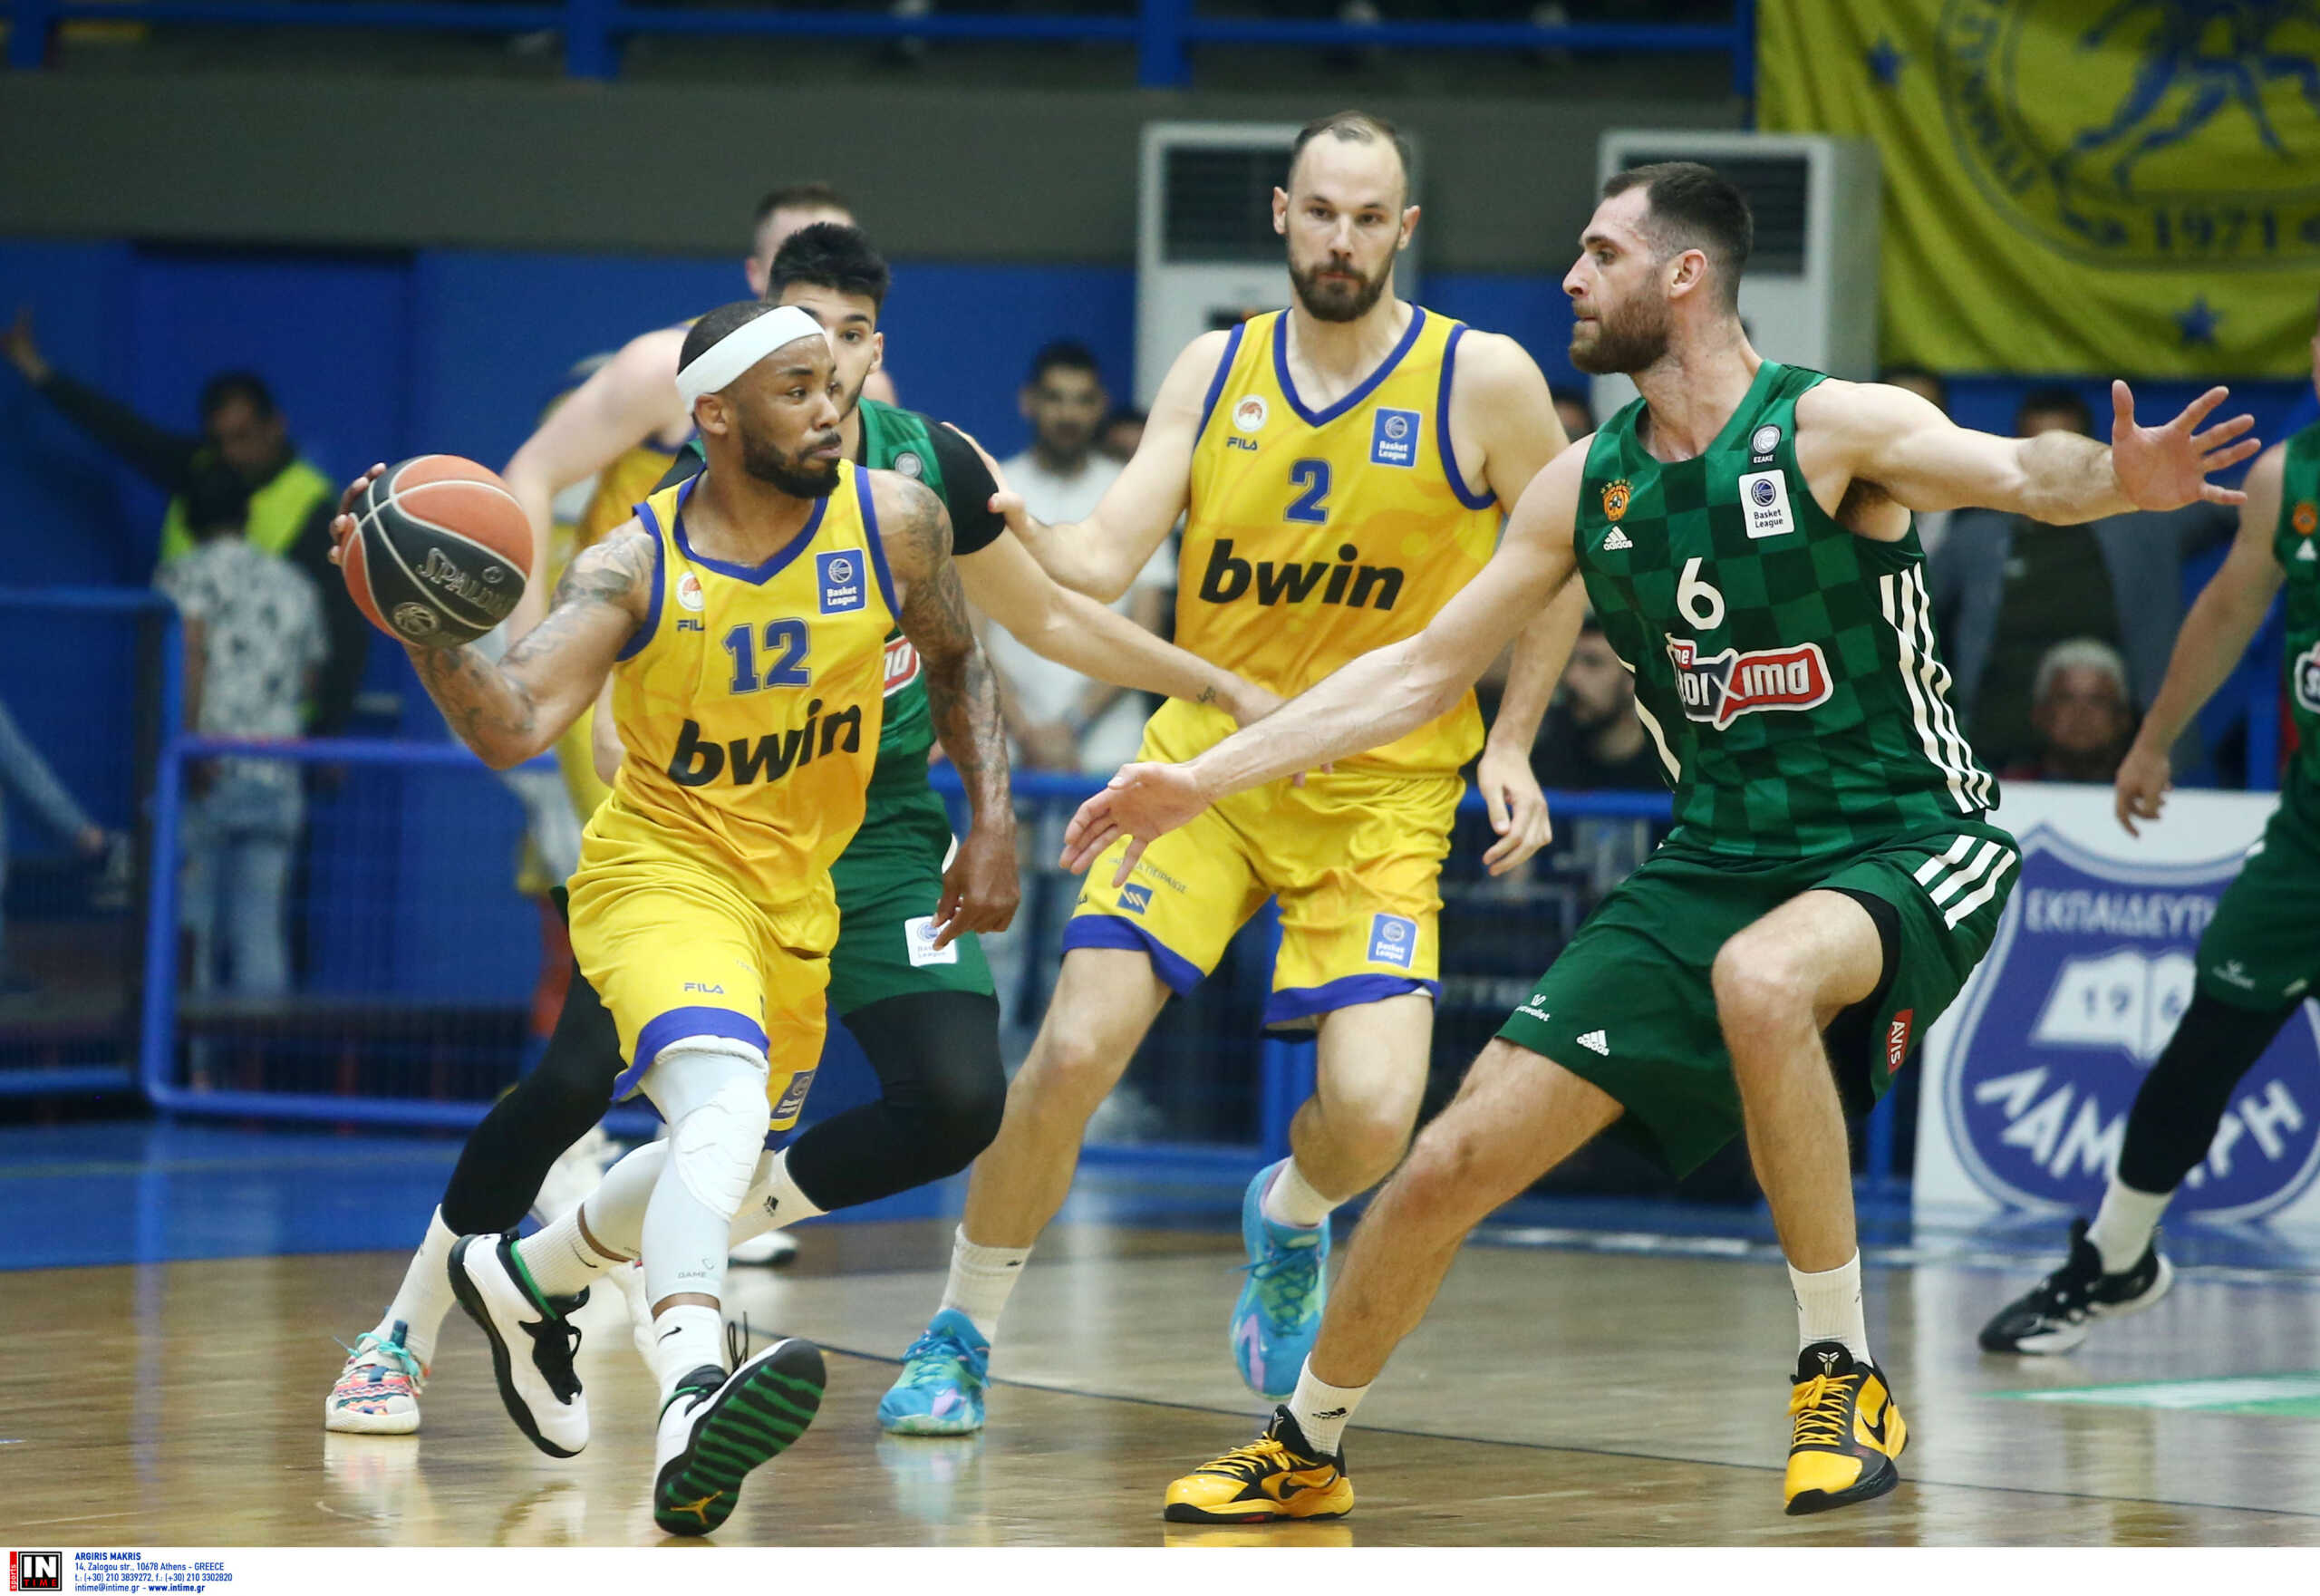 Περιστέρι – Παναθηναϊκός 73-58: Νίκη για την ομάδα του Σπανούλη και 1-1 στη σειρά των ημιτελικών της Basket League